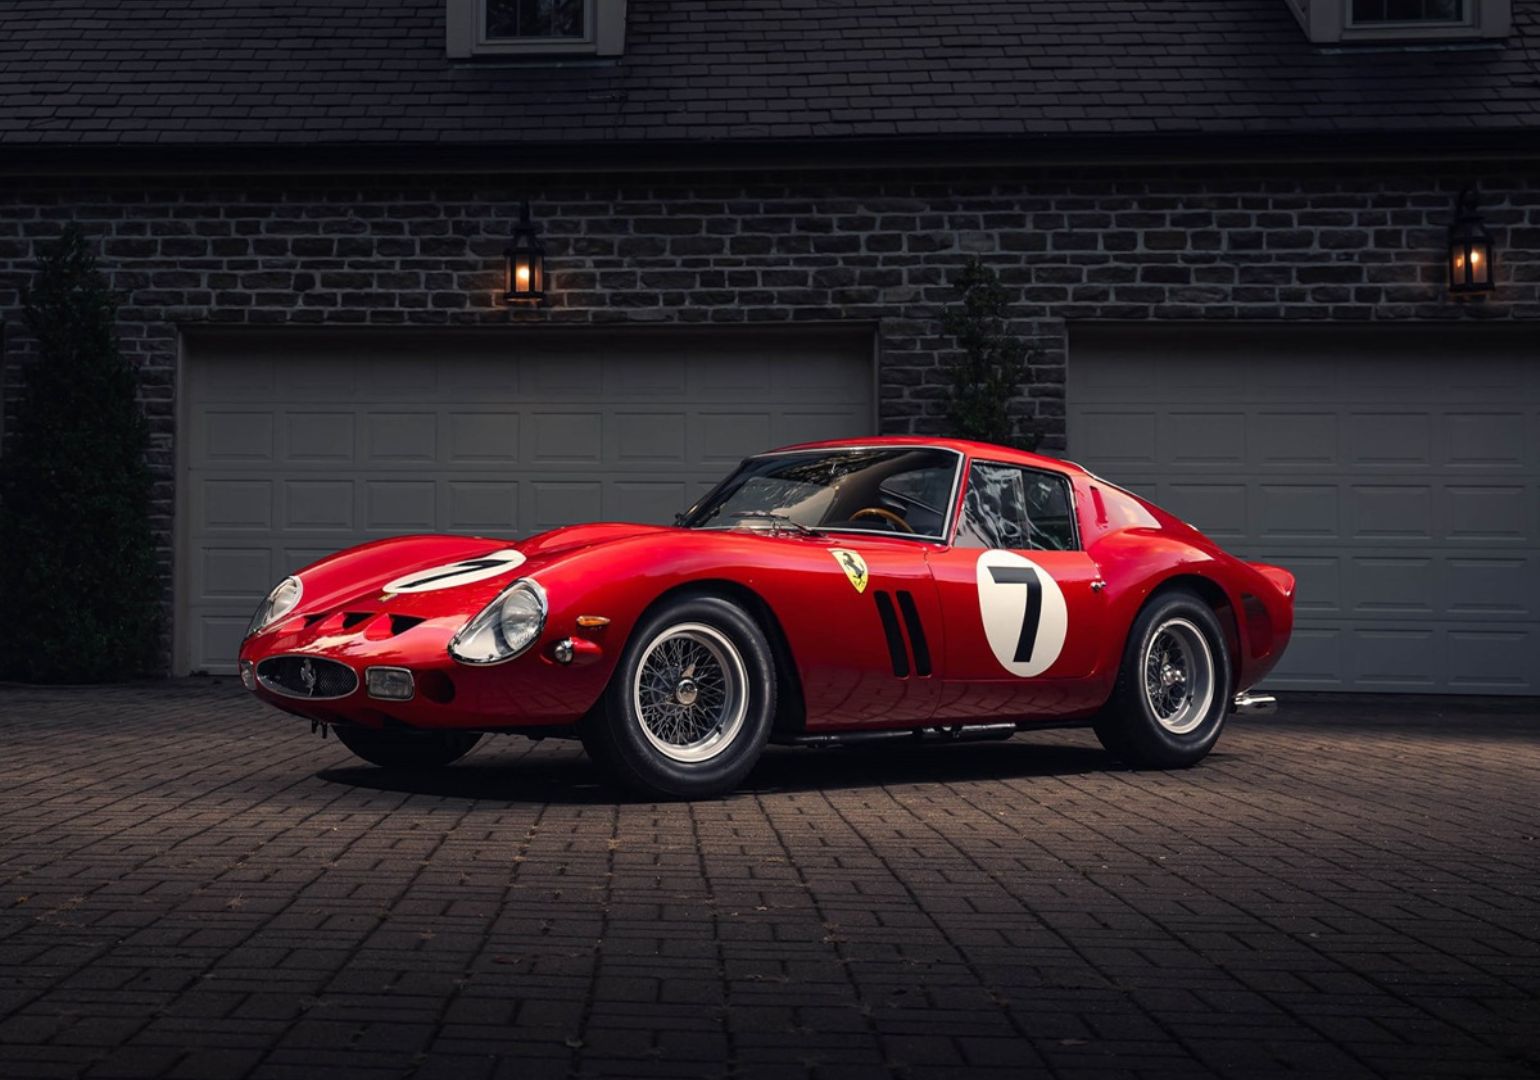 1962 წლის Ferrari 250 GTO აუქციონზე რეკორდულ ფასად გაიყიდა